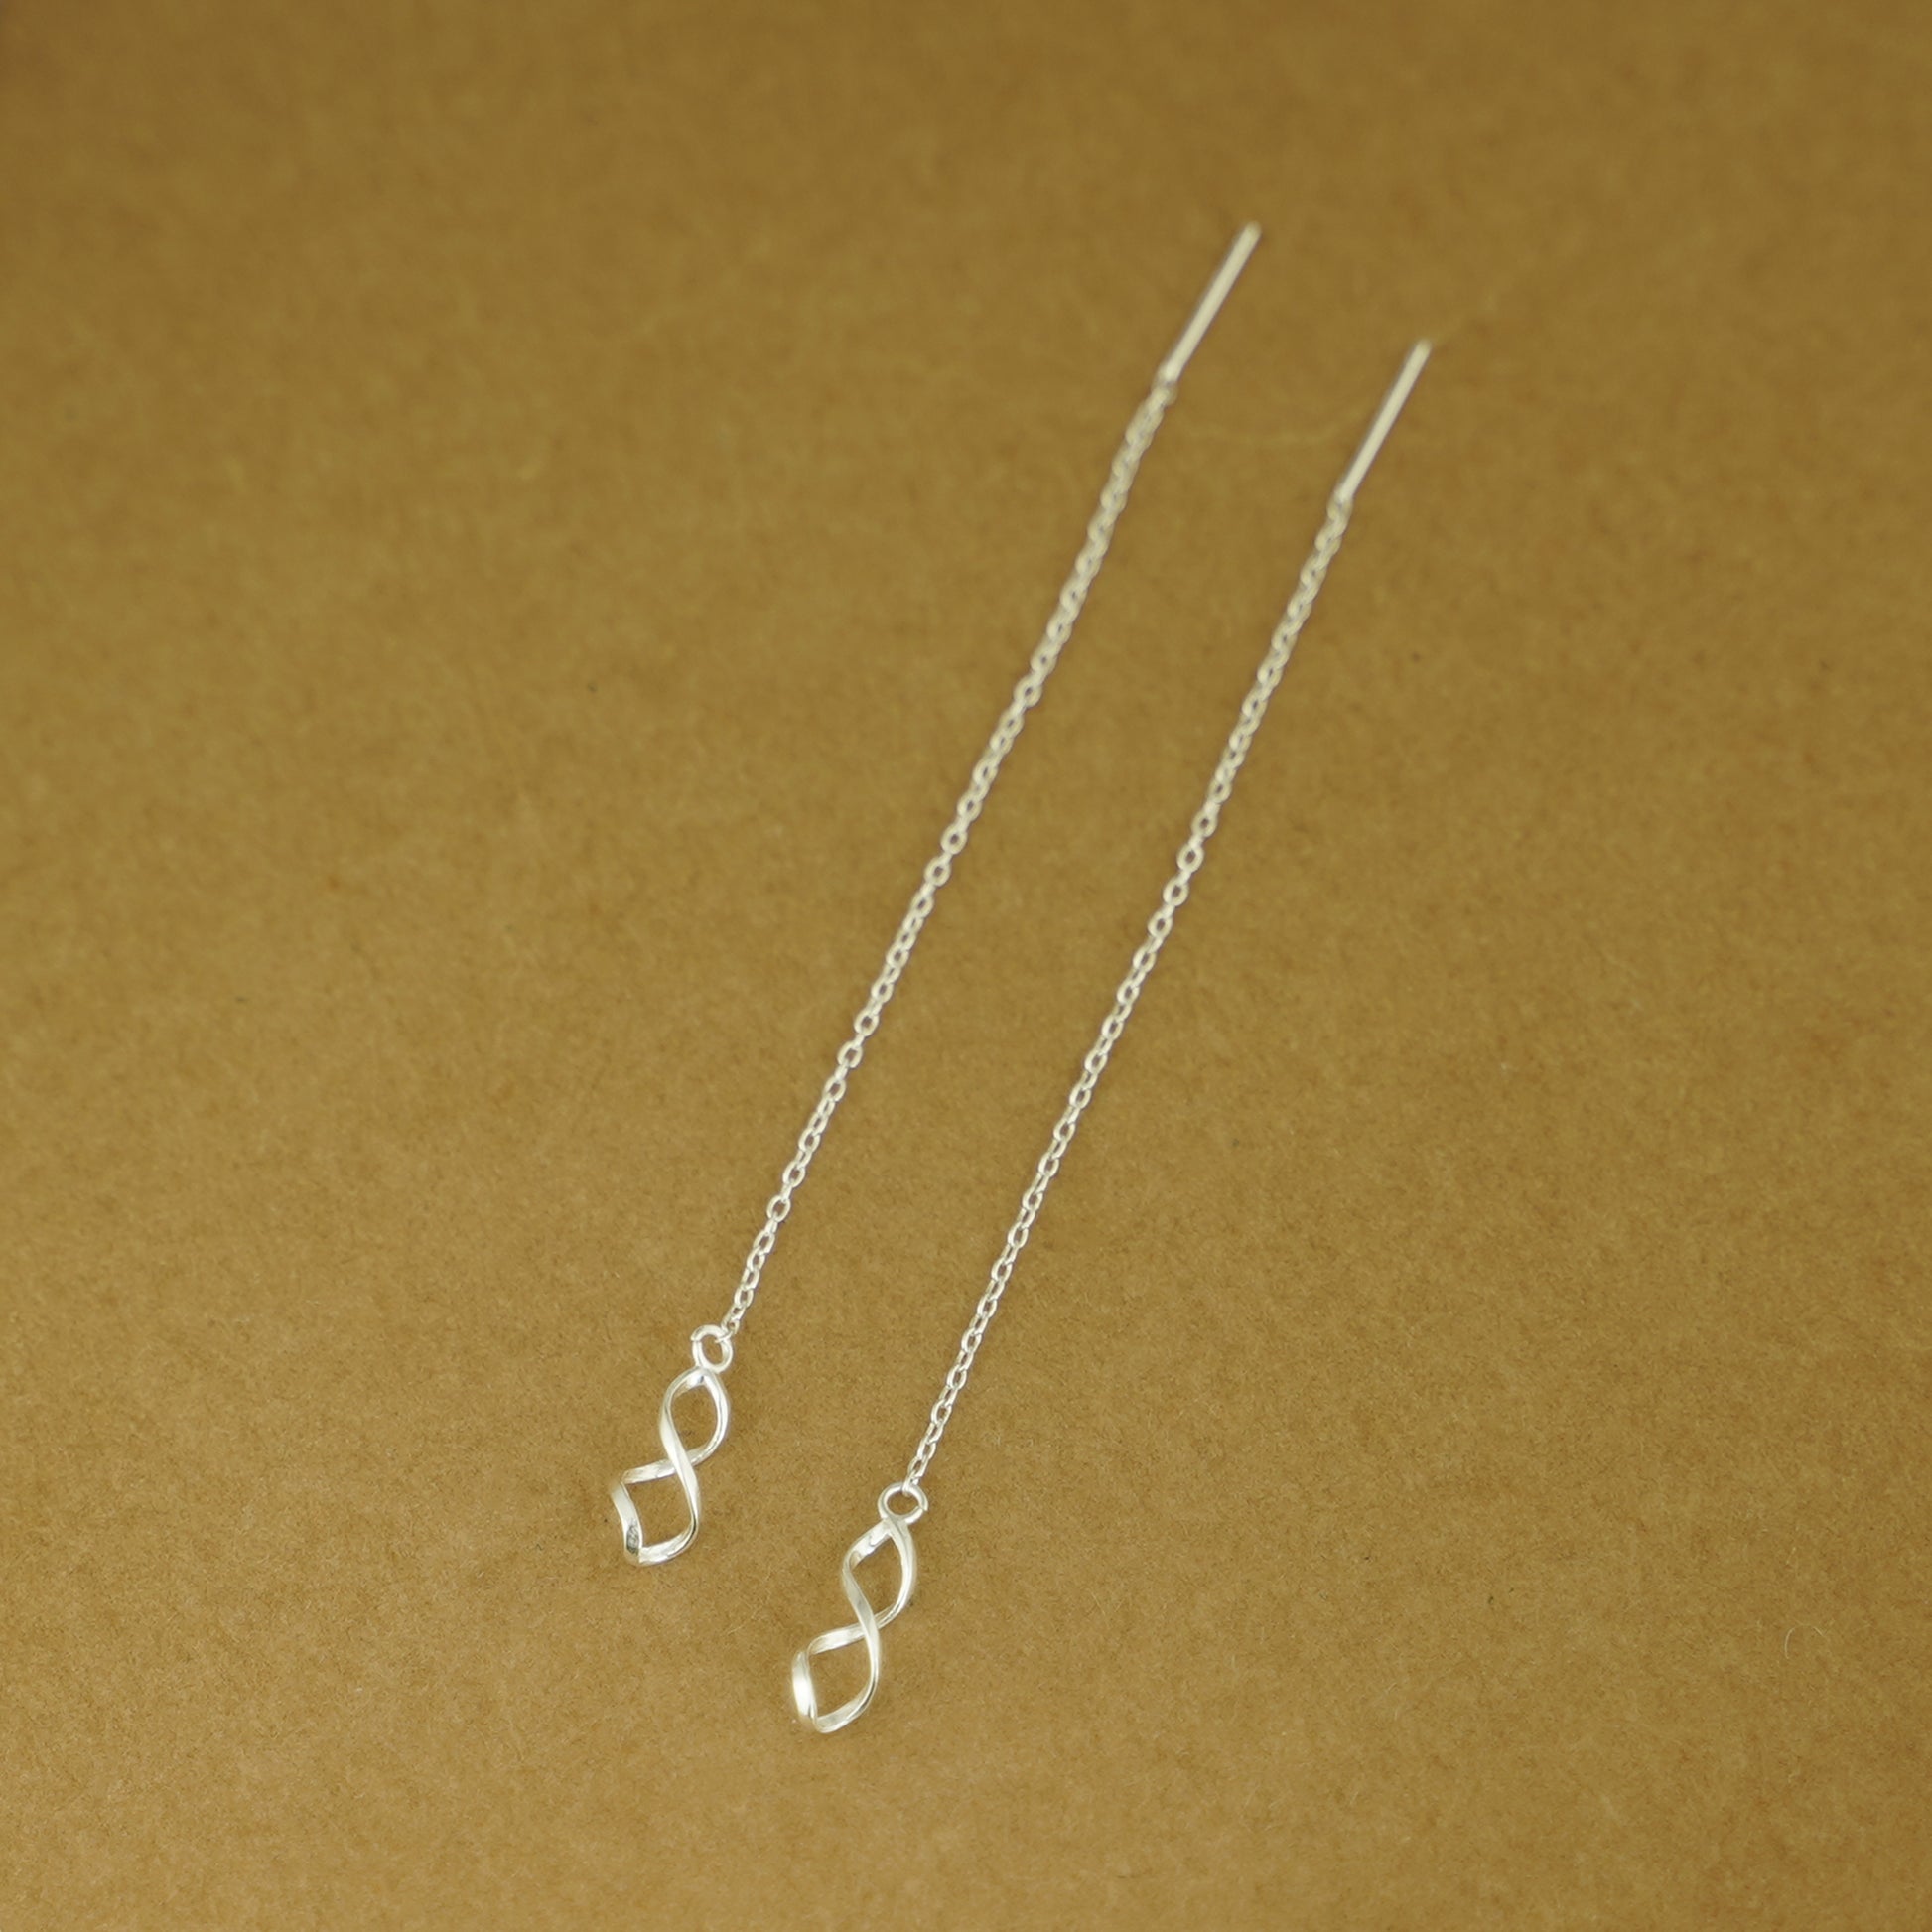 925 Sterling Silver Threader Earrings with Twisted Teardrop Spirals - sugarkittenlondon